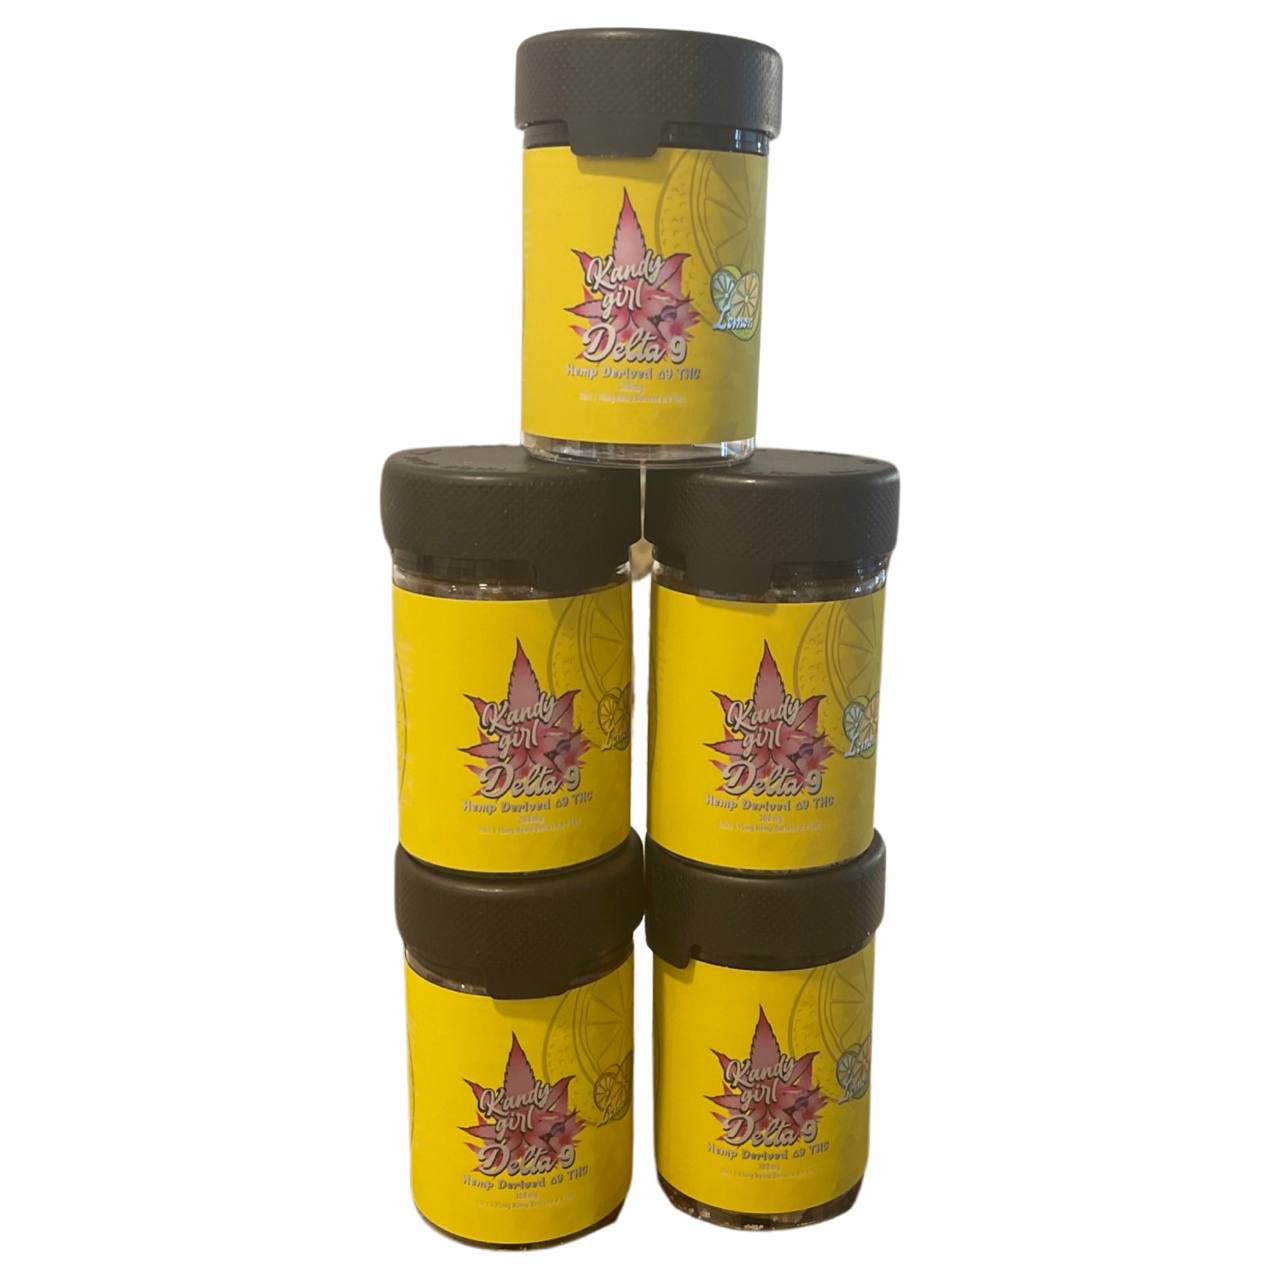 Delta 9 THC Gummies Lemon - Five Bottle Bundle (1500mg THC Total)